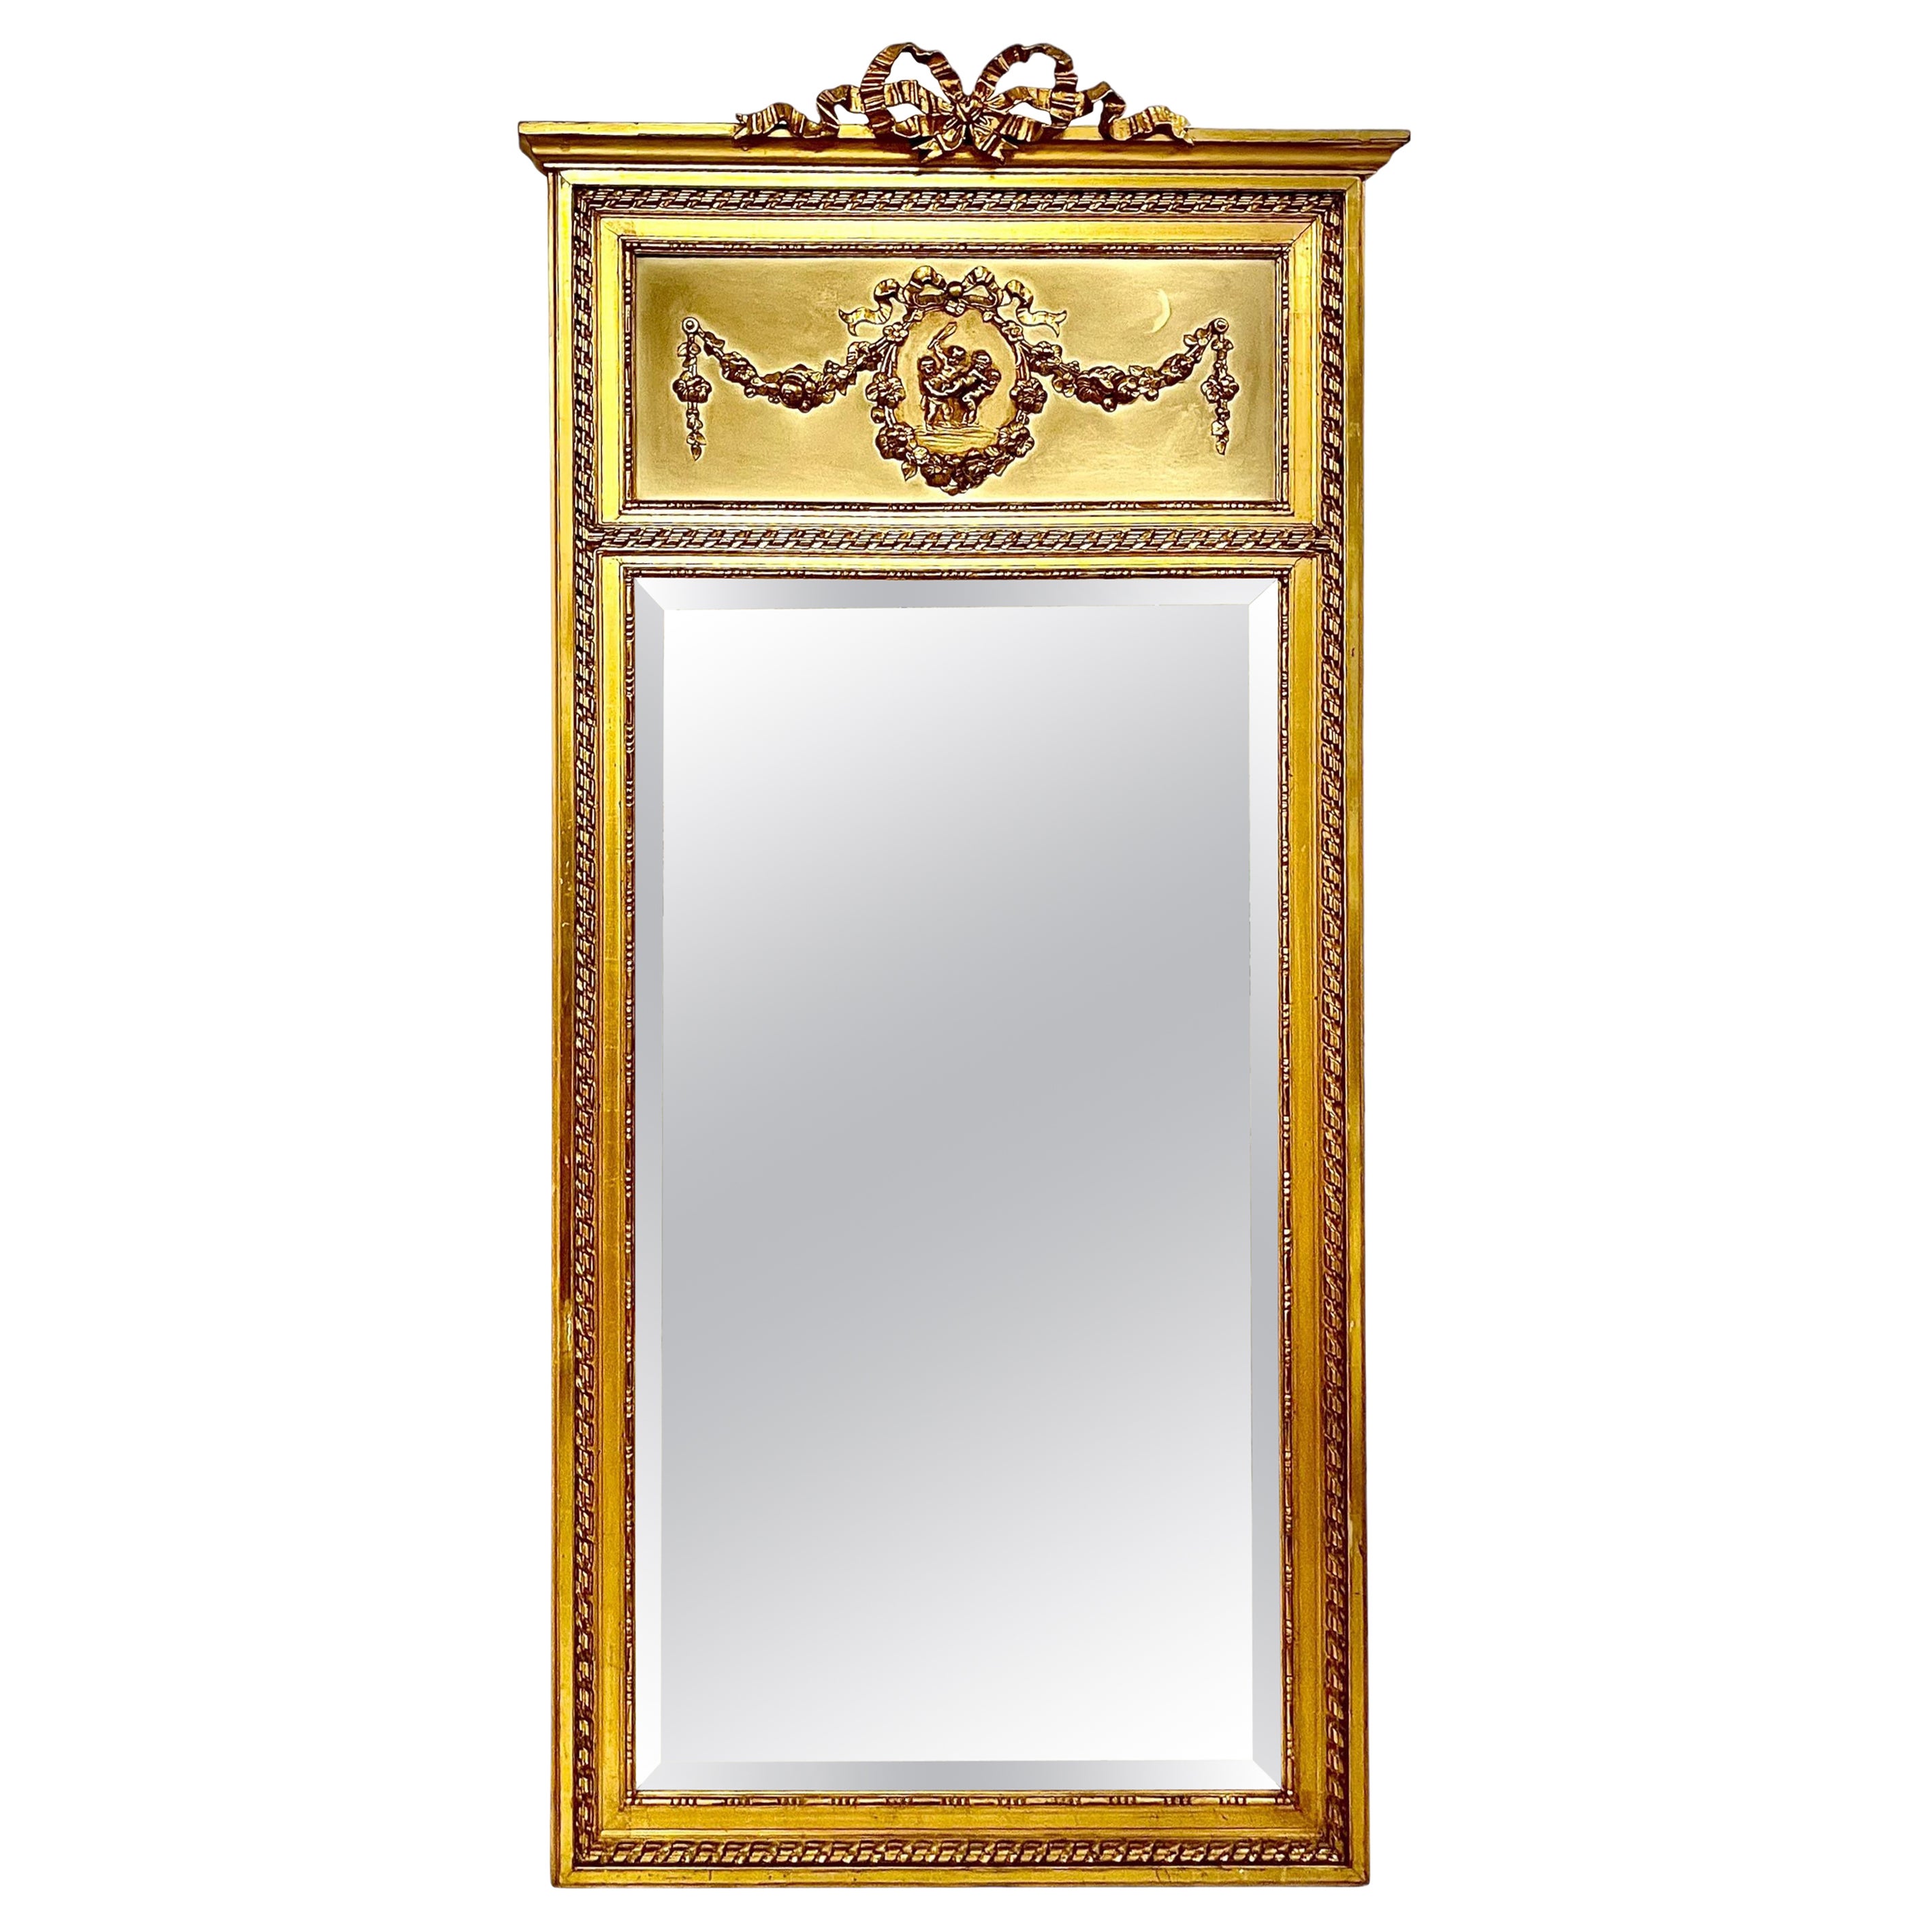  19th Century Louis XVI Trumeau Gilded Mirror with Mischievous Cherubs Design